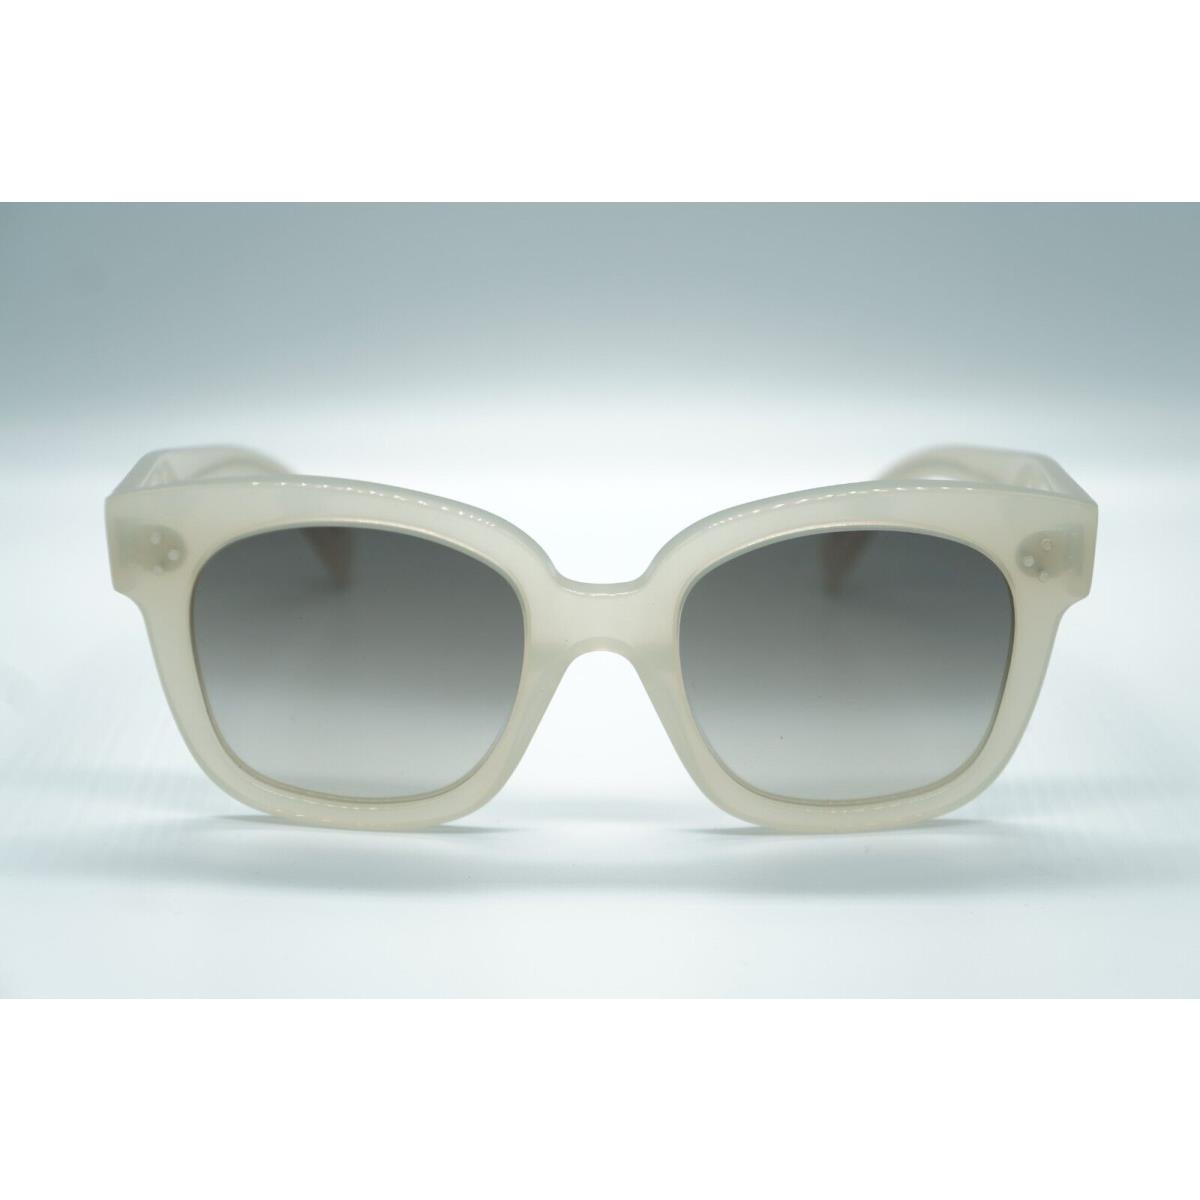 Celine eyeglasses  - Frame: White 1